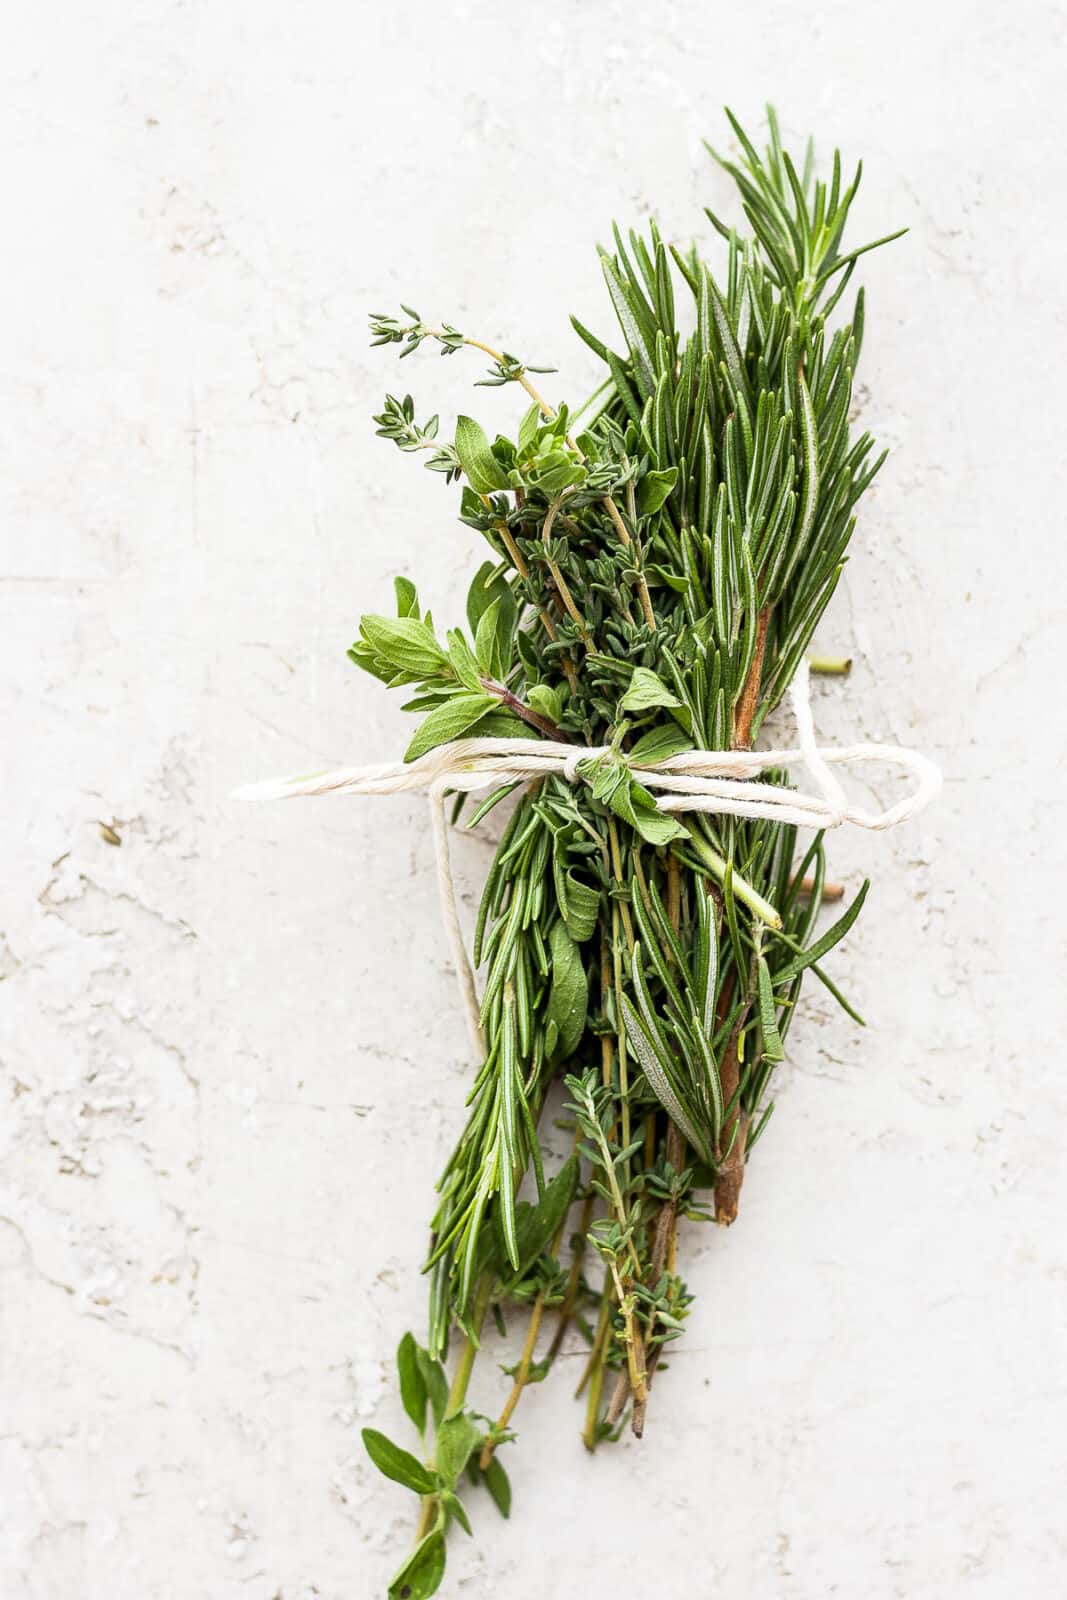 A fresh herb bundle.